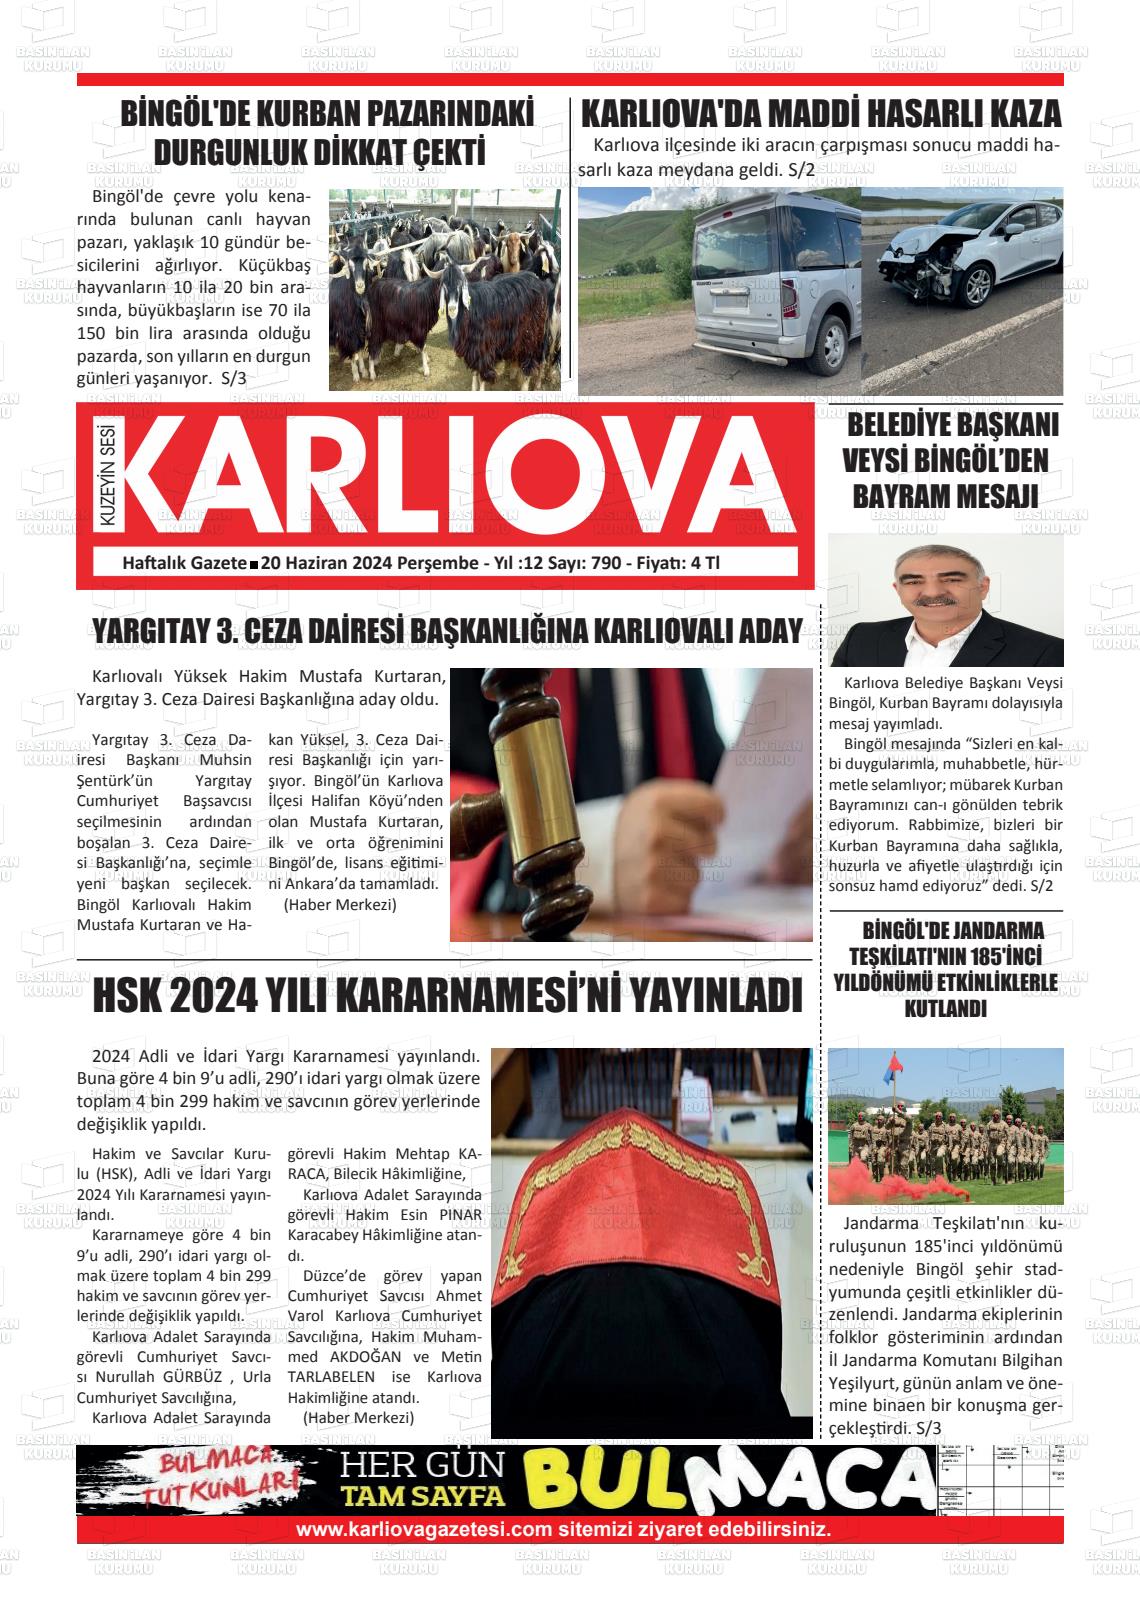 KUZEYİN SESİ KARLIOVA Gazetesi